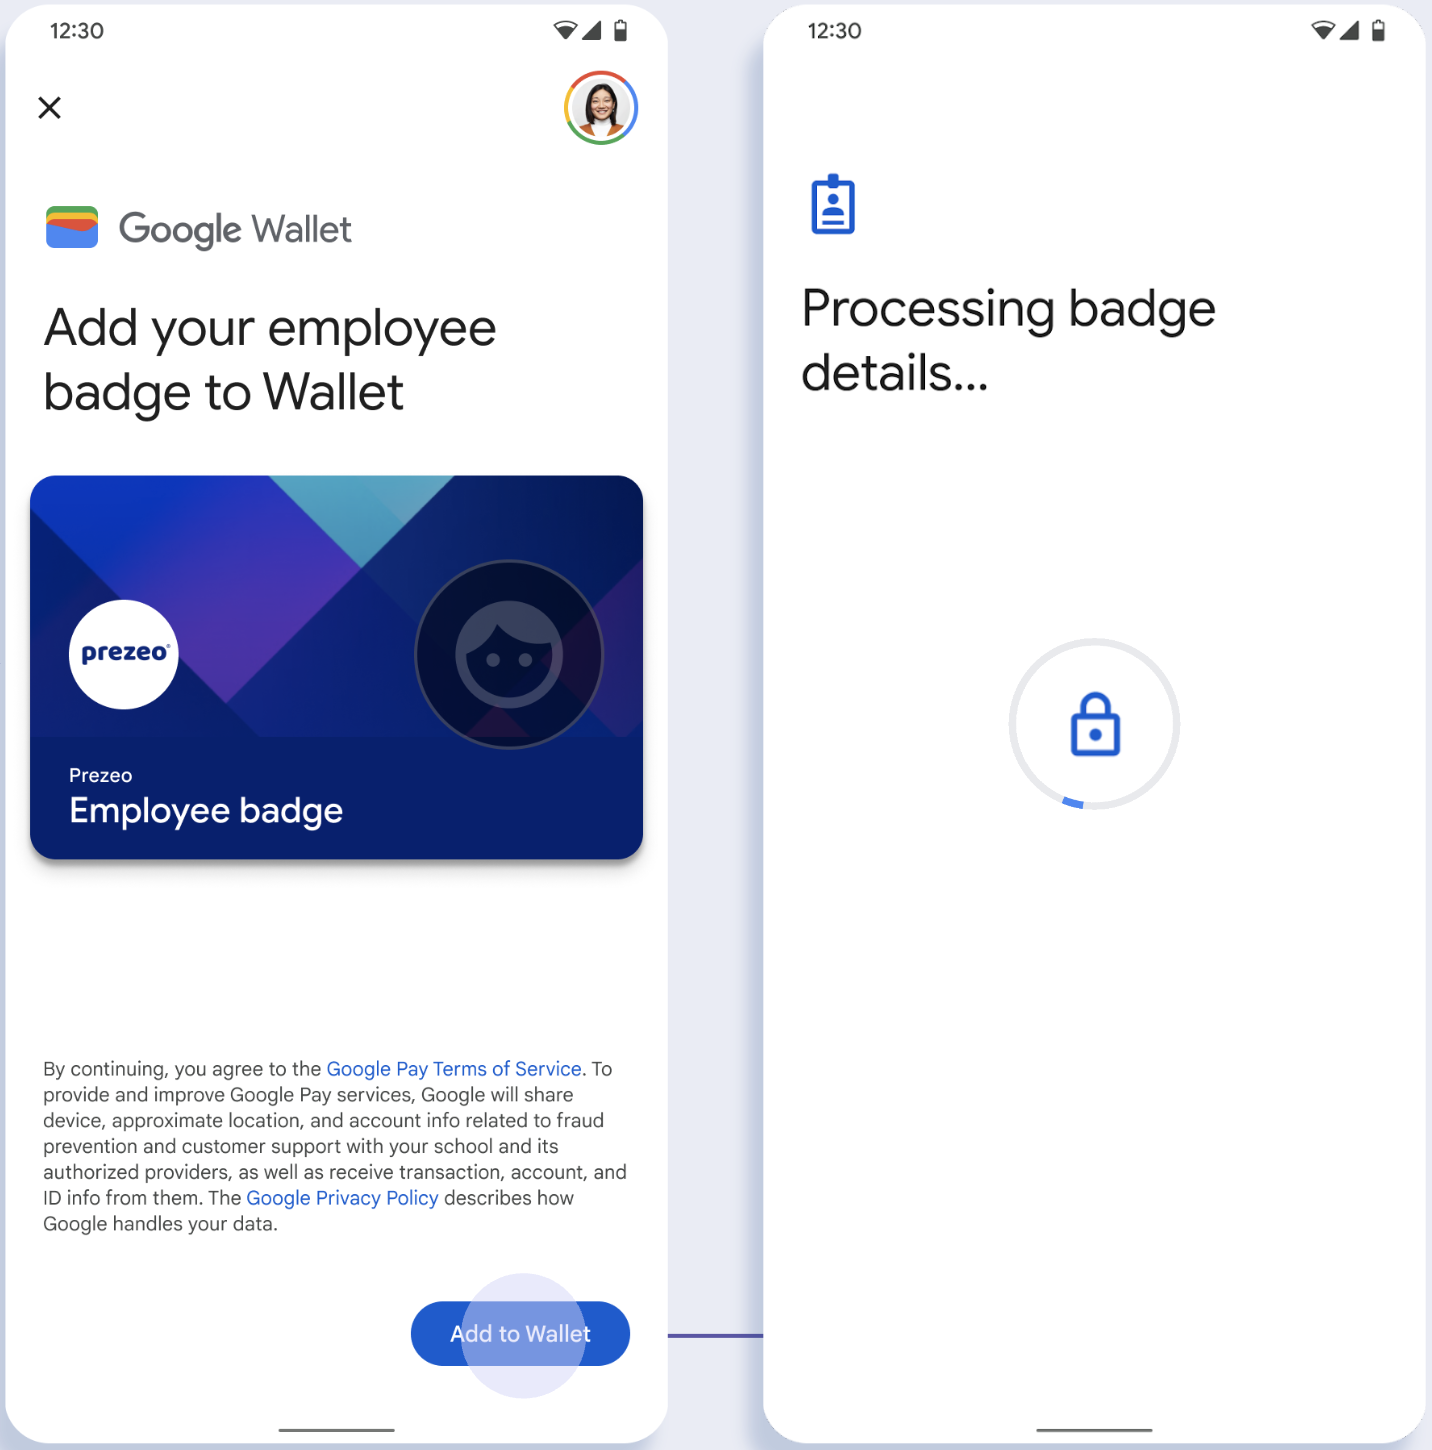 En la primera pantalla, la app se conecta a la Billetera de Google. En la segunda pantalla, el usuario acepta las Condiciones del Servicio y continúa.